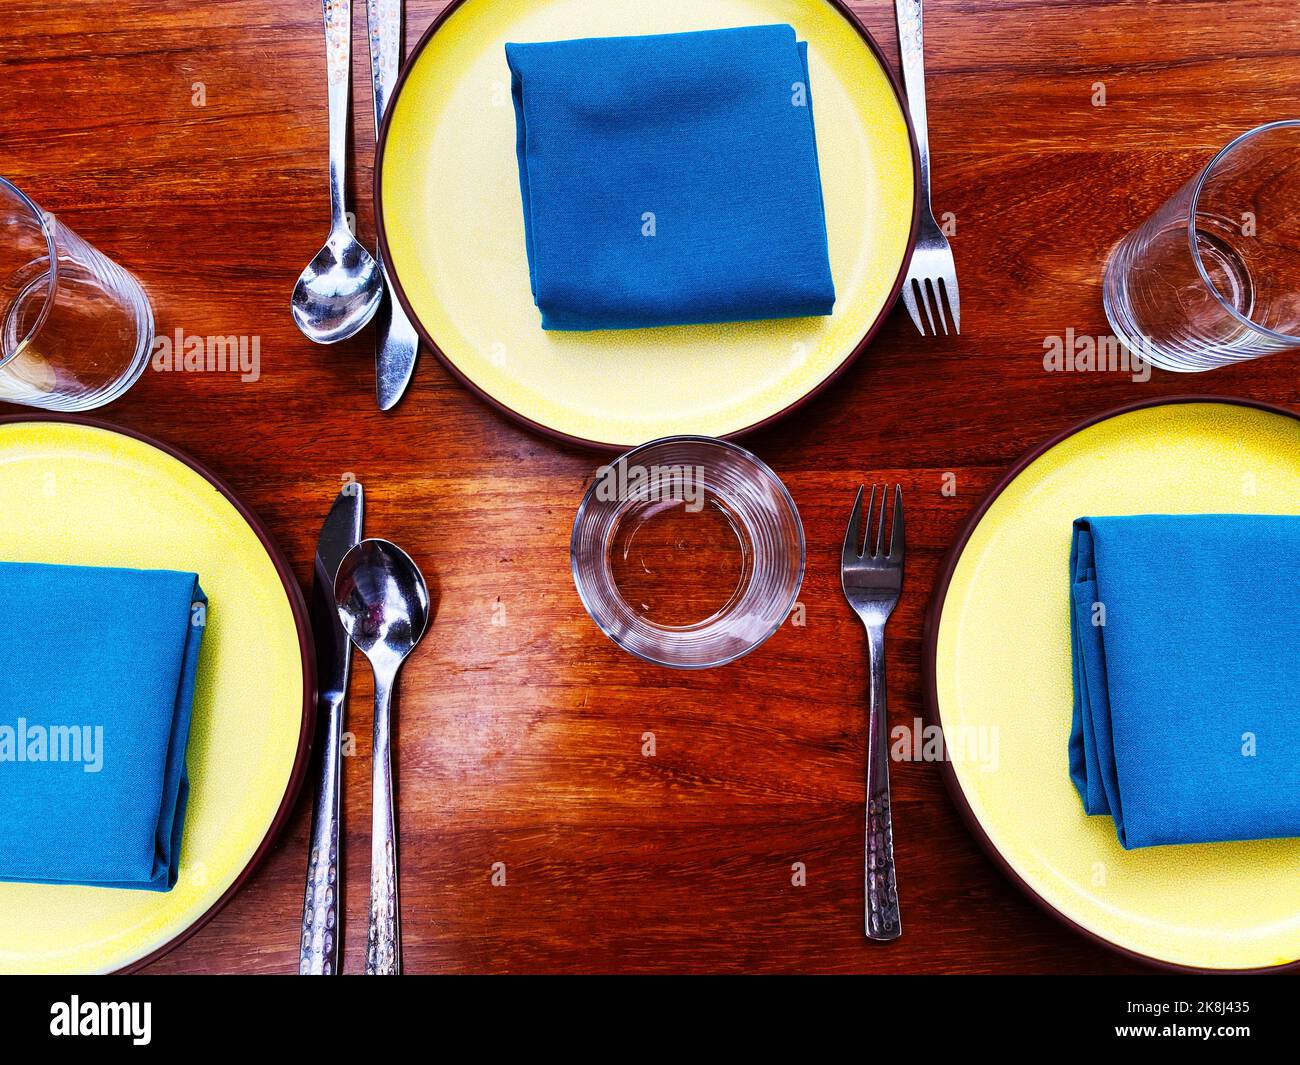 Un décor avec des serviettes bleues et des assiettes jaunes. Disposition de la table de restaurant moderne et colorée, inflammable Banque D'Images